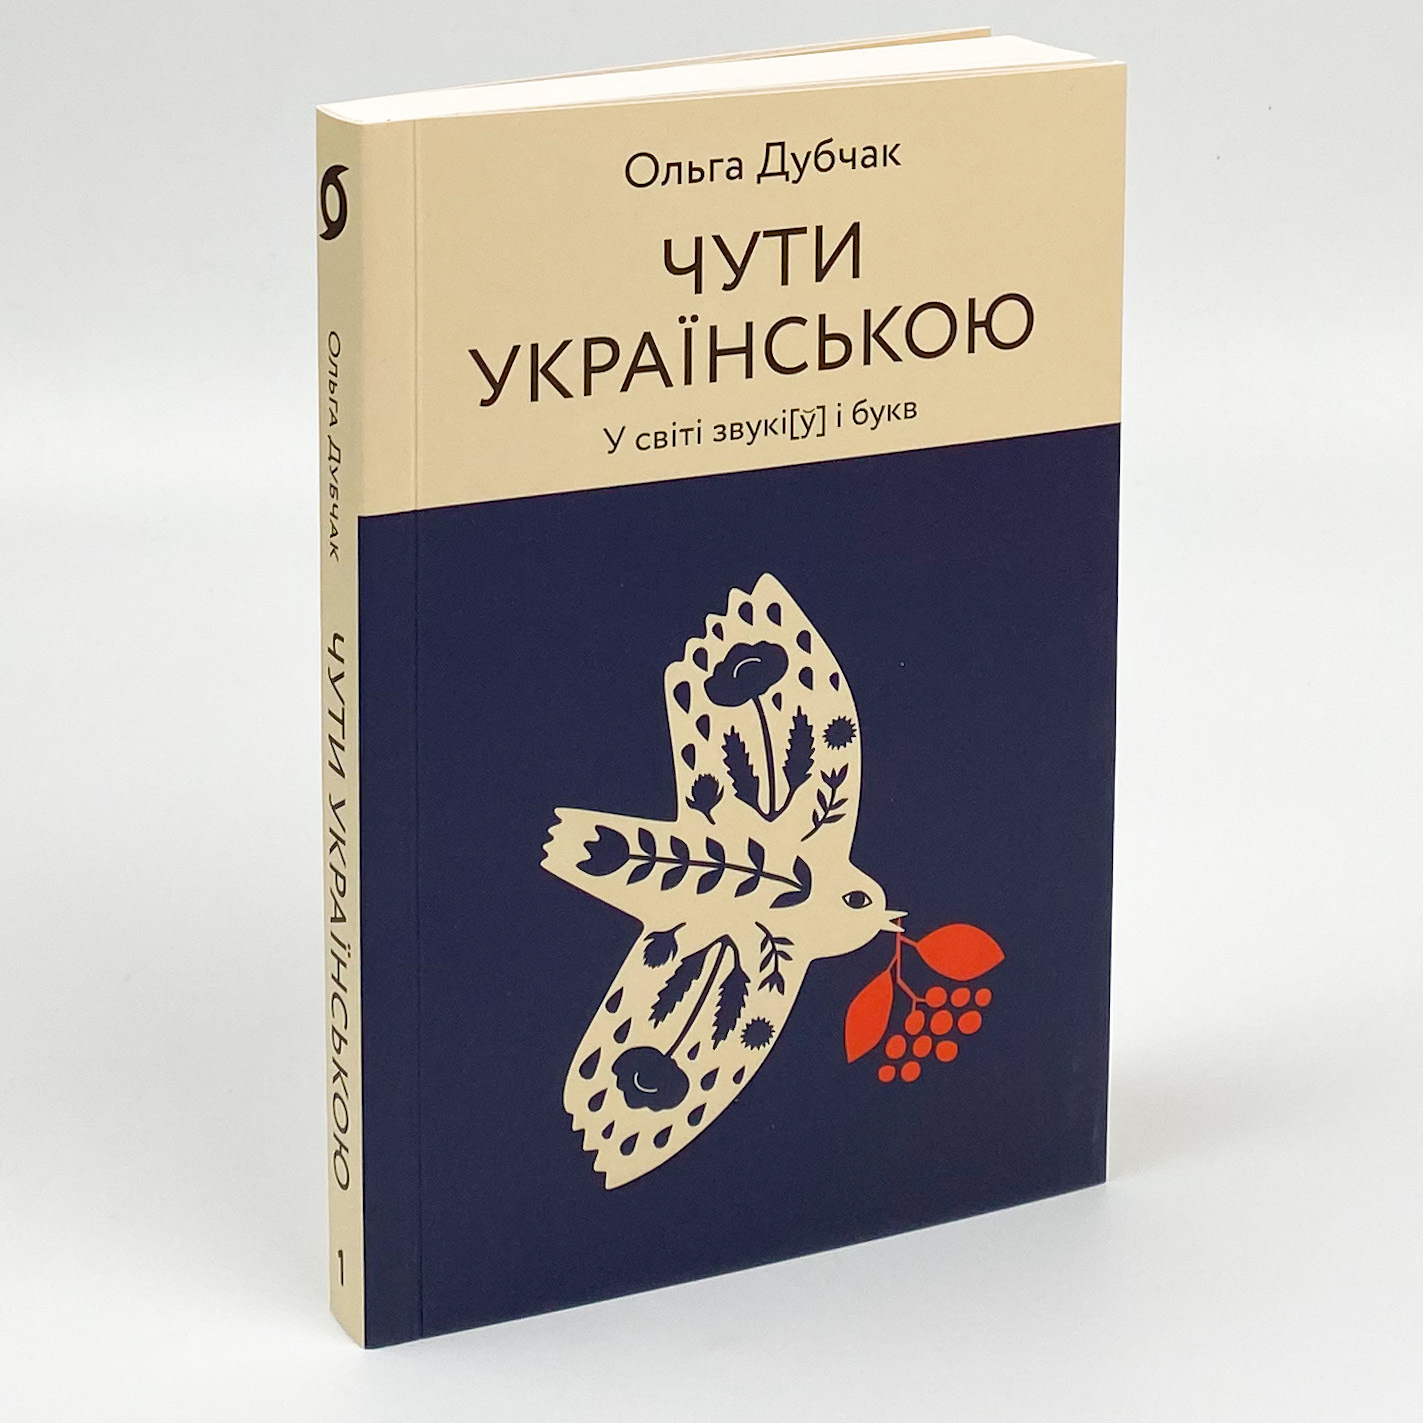 Чути українською. У світі звукі[у] і букв. Автор — Ольга Дубчак. 